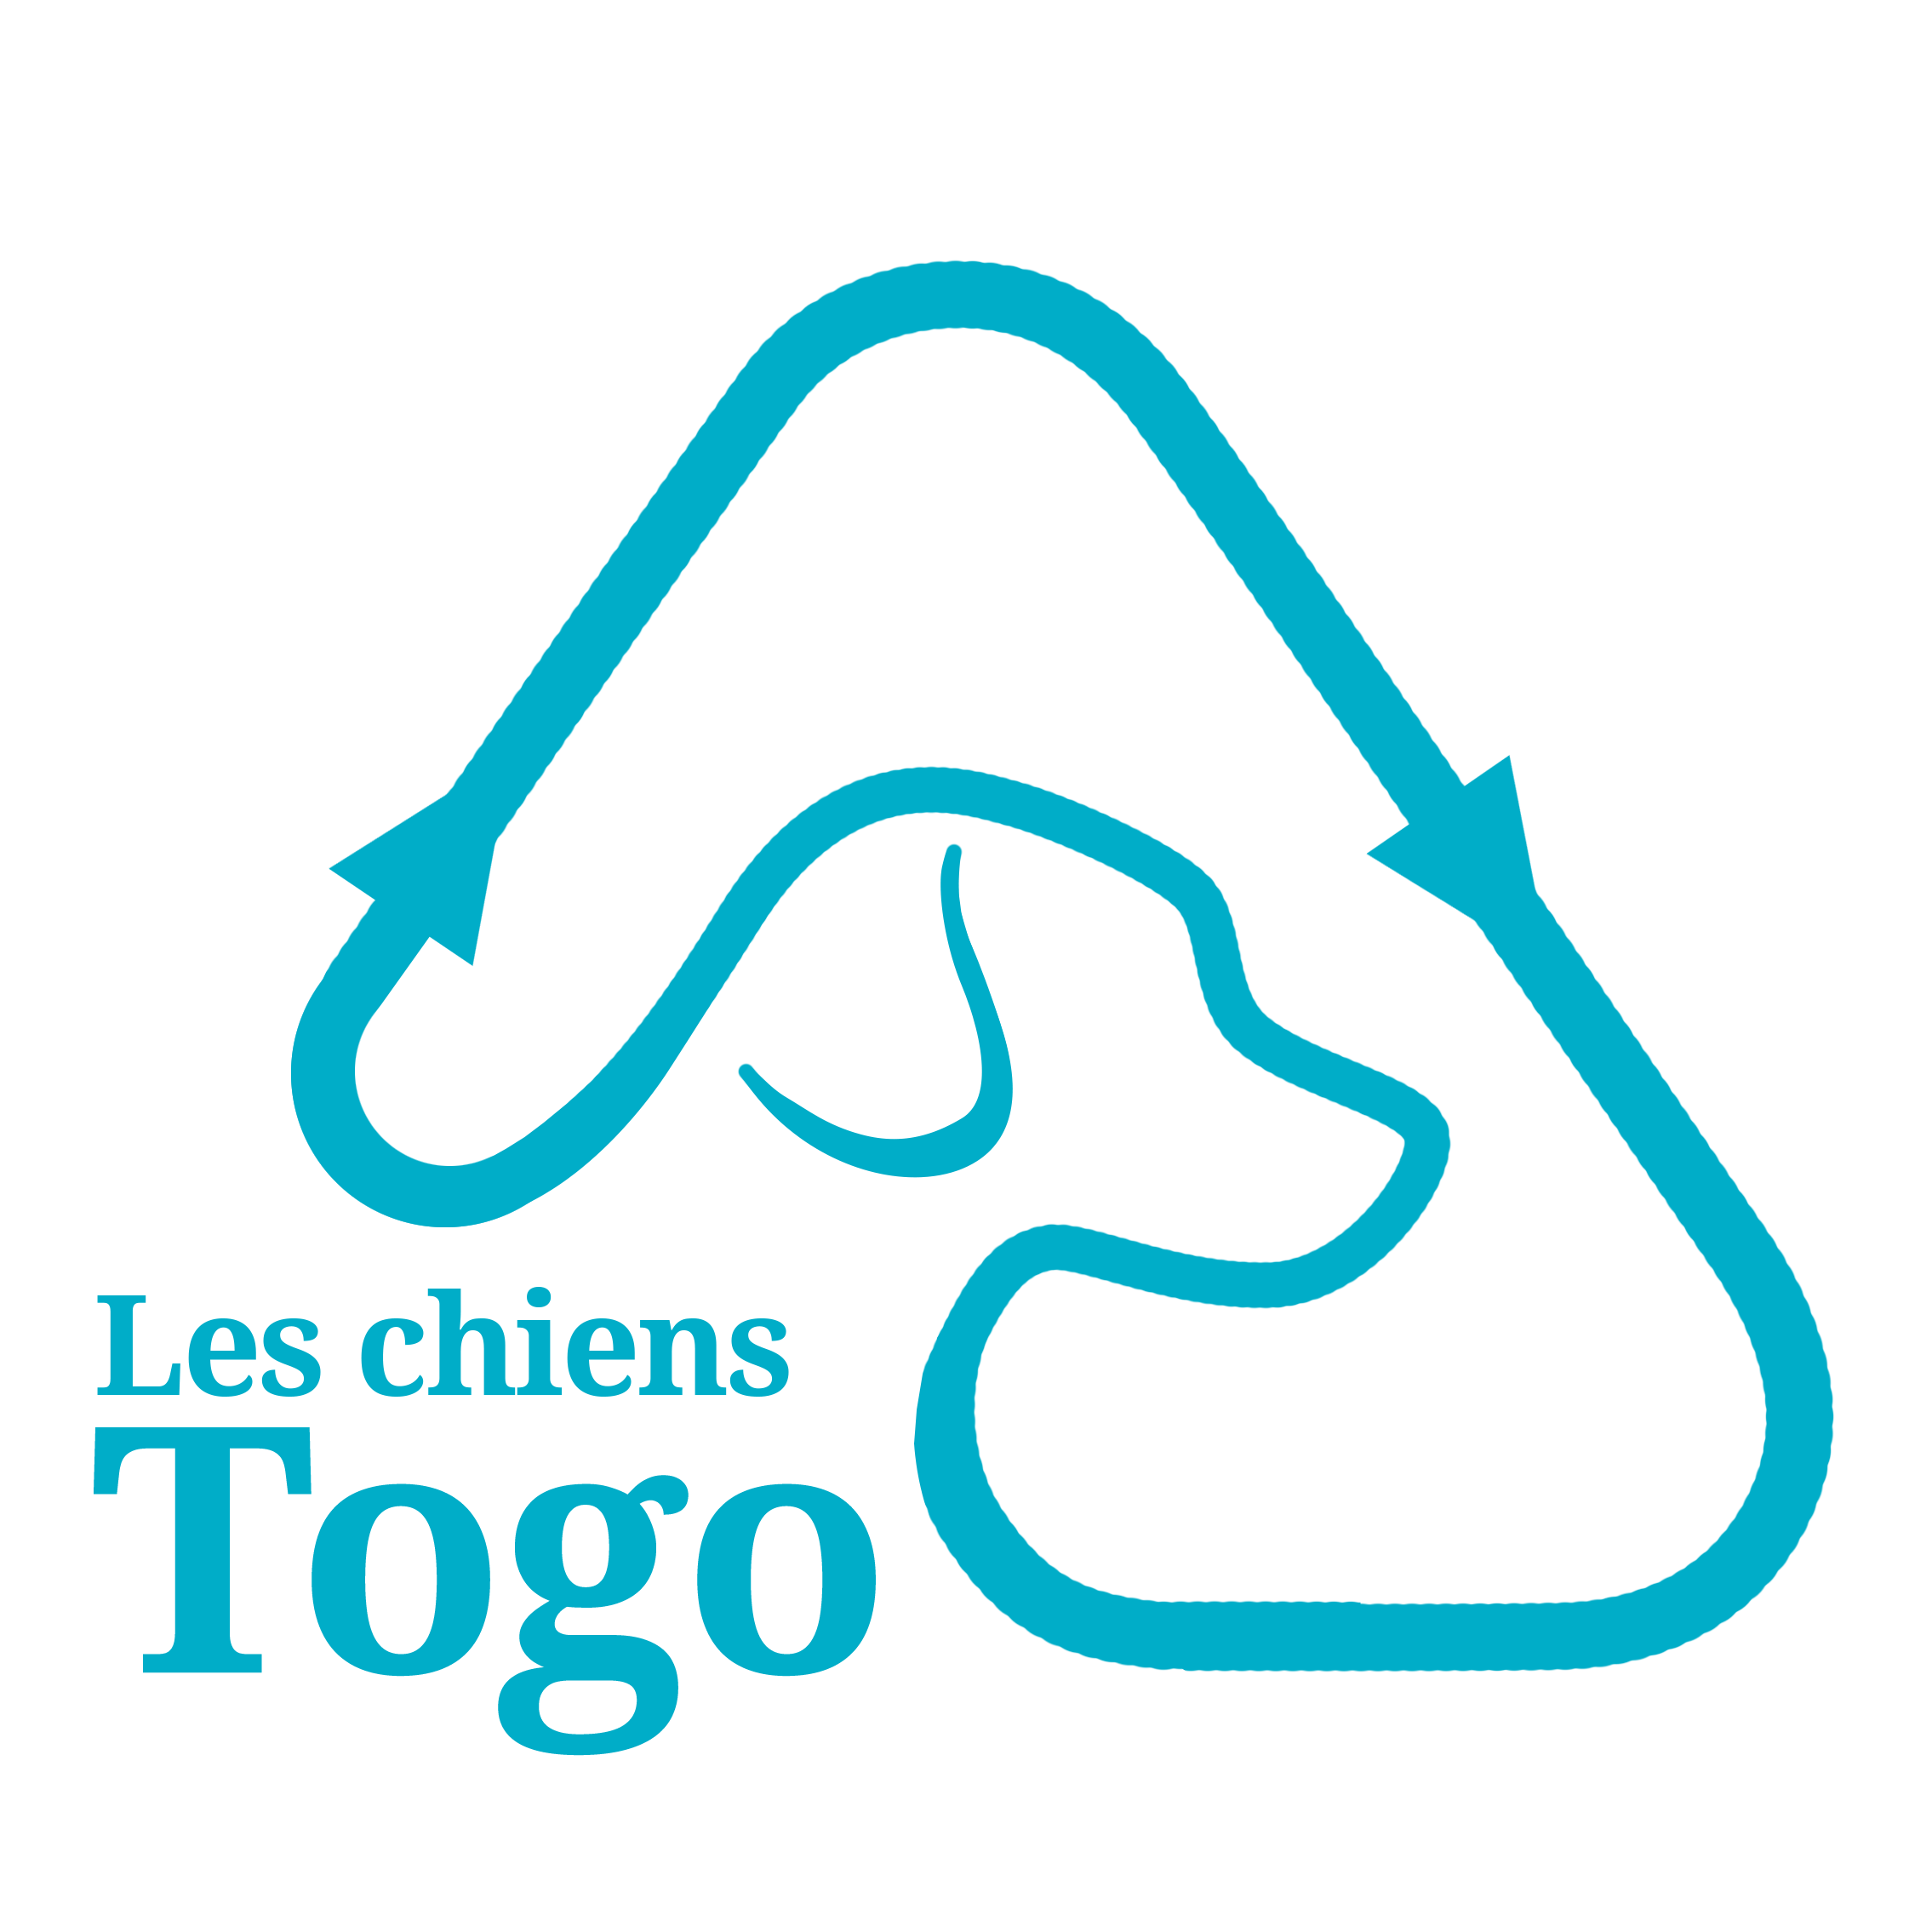 Les chiens Togo logo